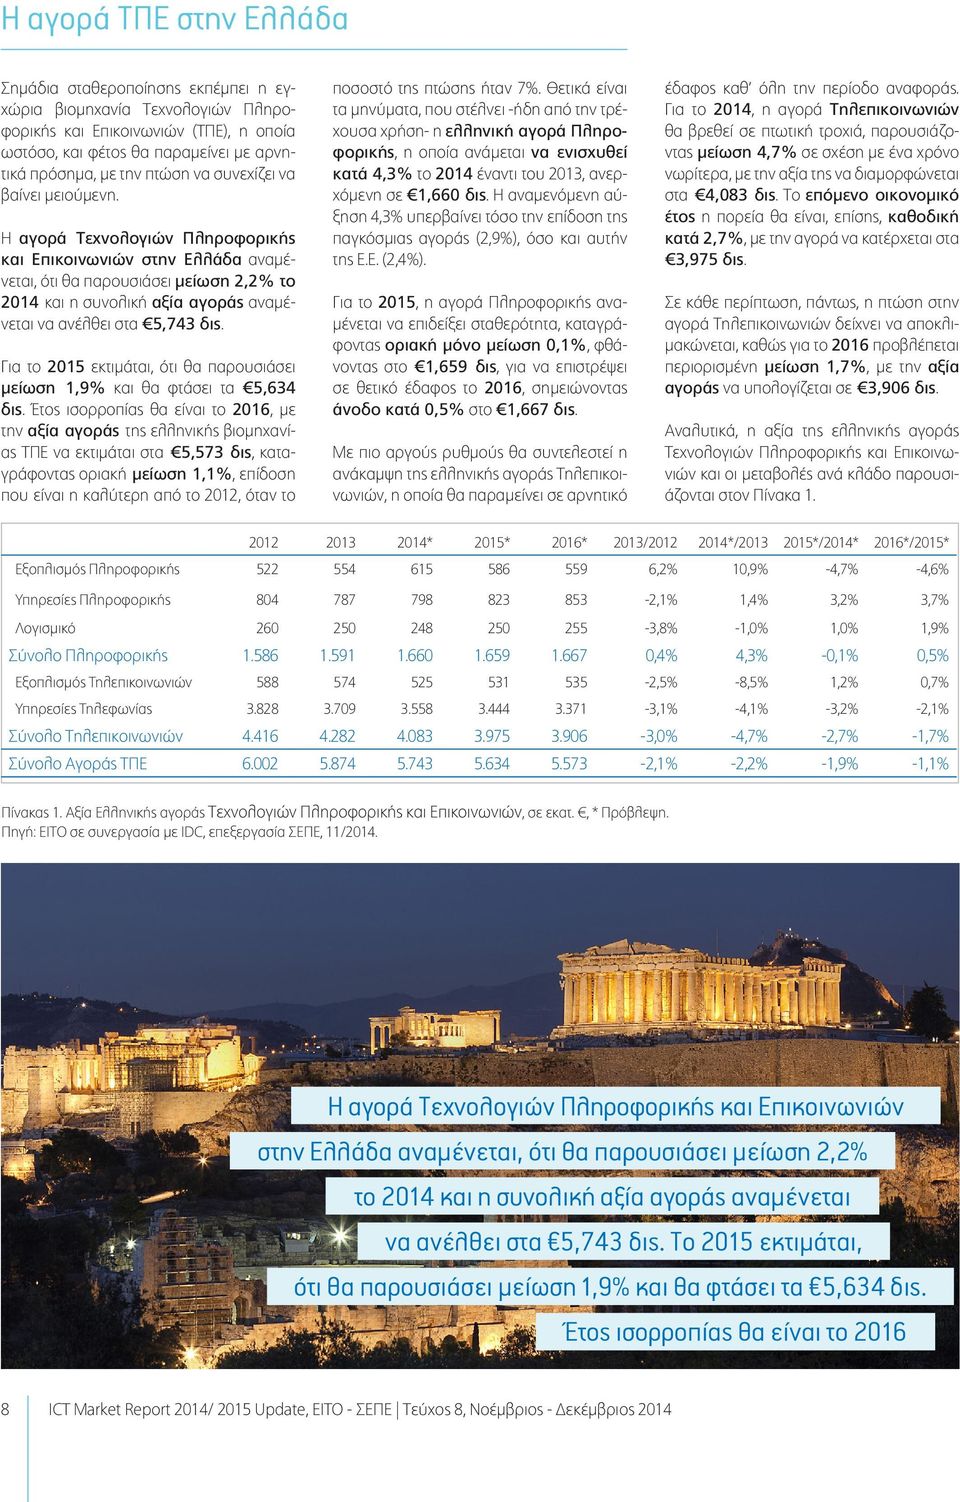 Η αγορά Τεχνολογιών Πληροφορικής και Επικοινωνιών στην Ελλάδα αναμένεται, ότι θα παρουσιάσει μείωση 2,2% το 2014 και η συνολική αξία αγοράς αναμένεται να ανέλθει στα 5,743 δις.